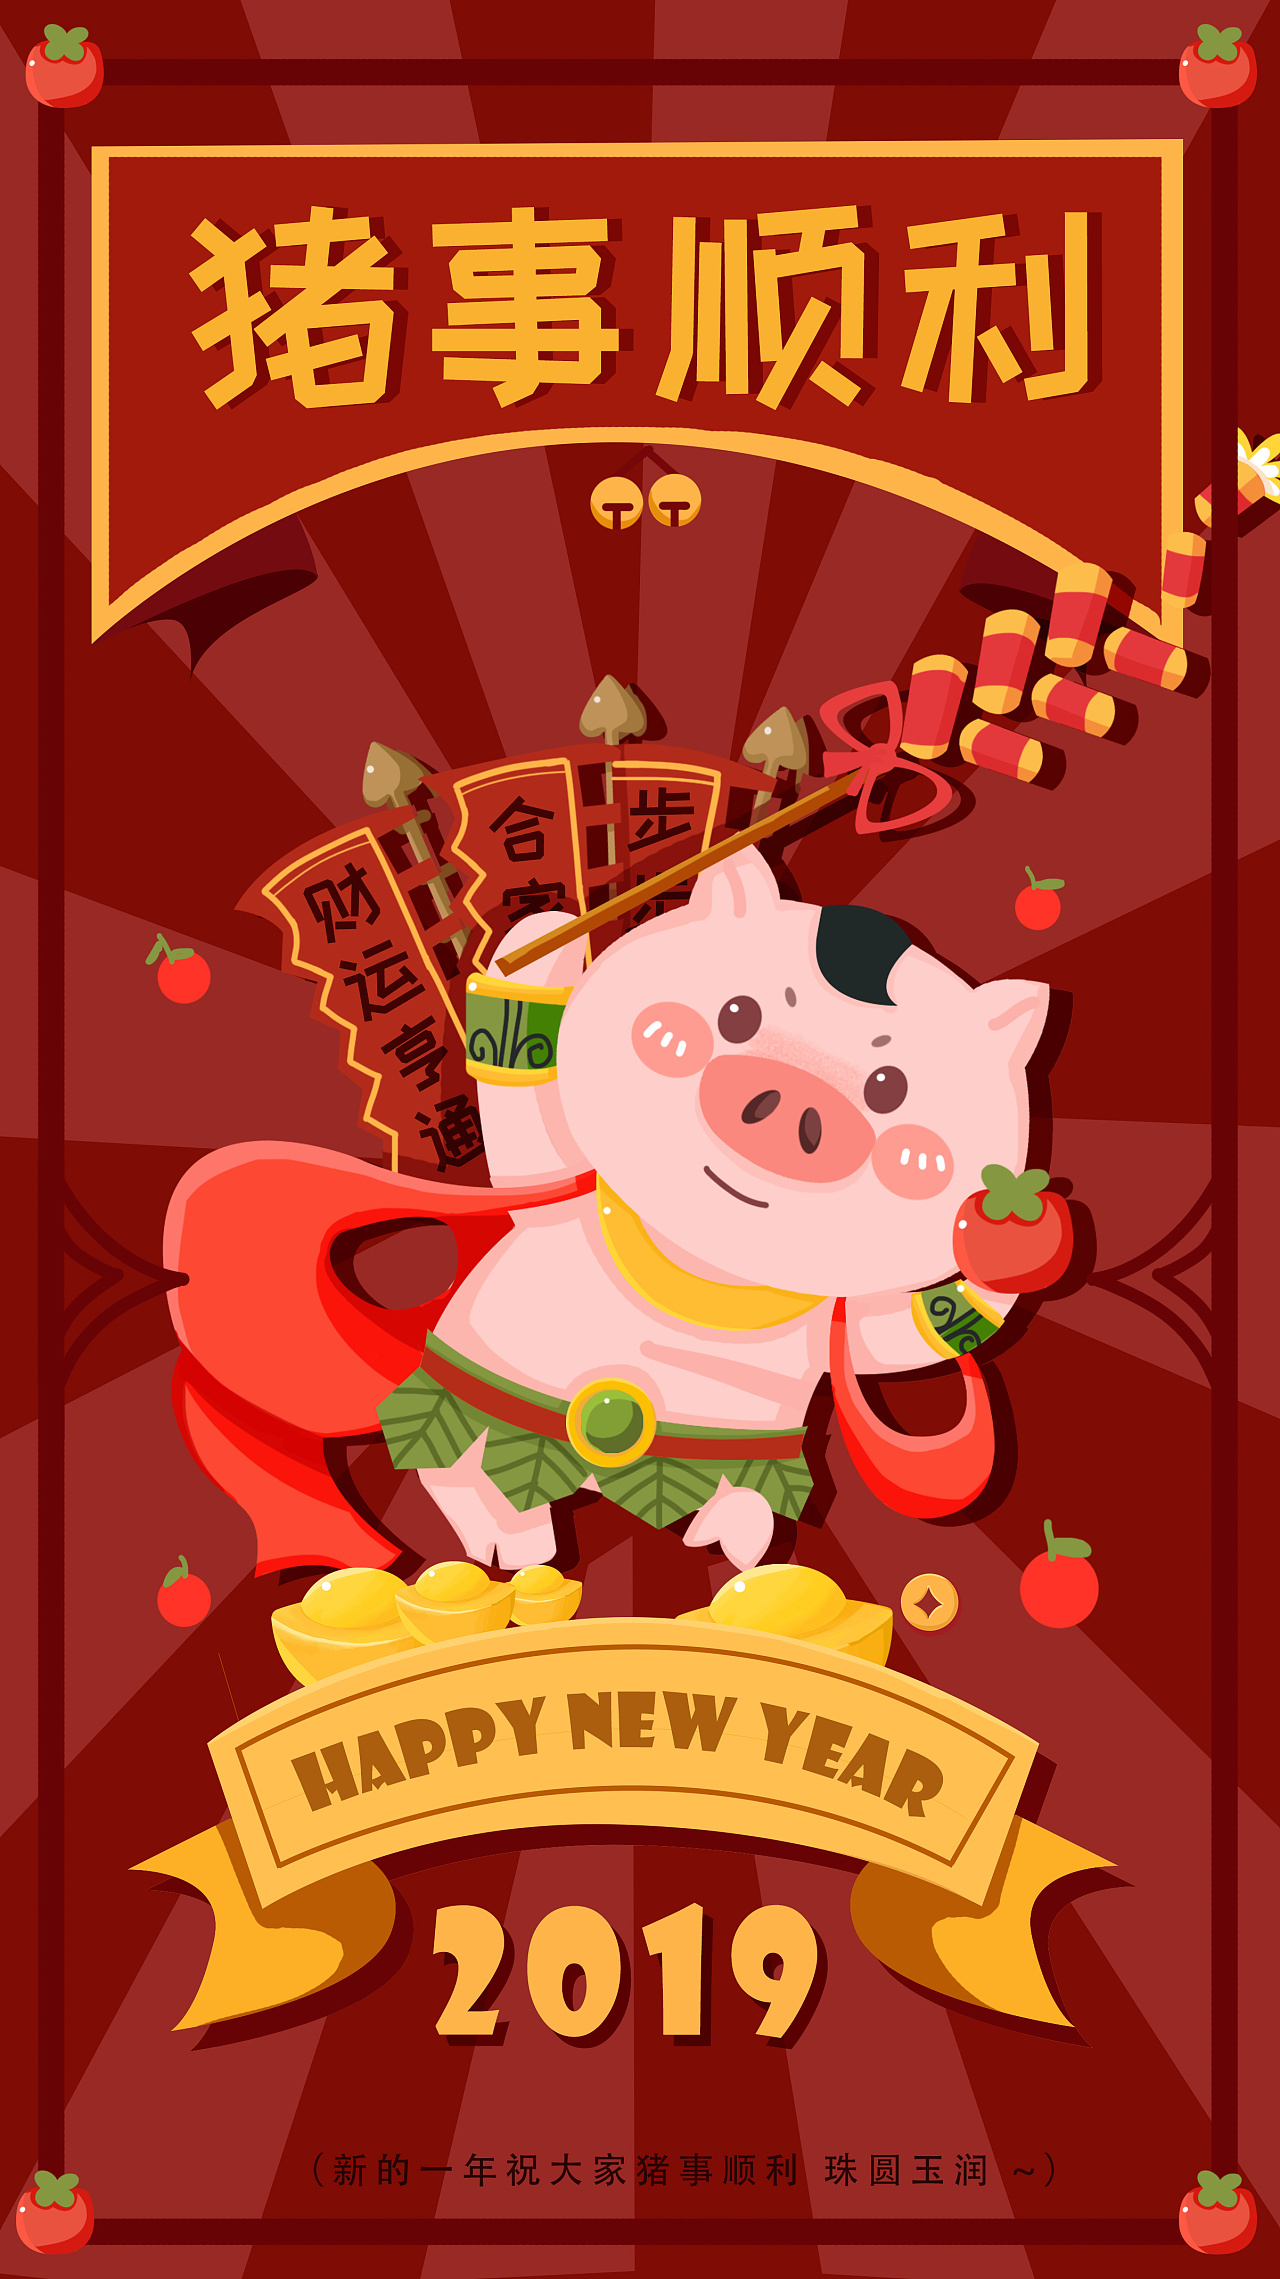 猪年贺年图 祝大家2019猪事顺利